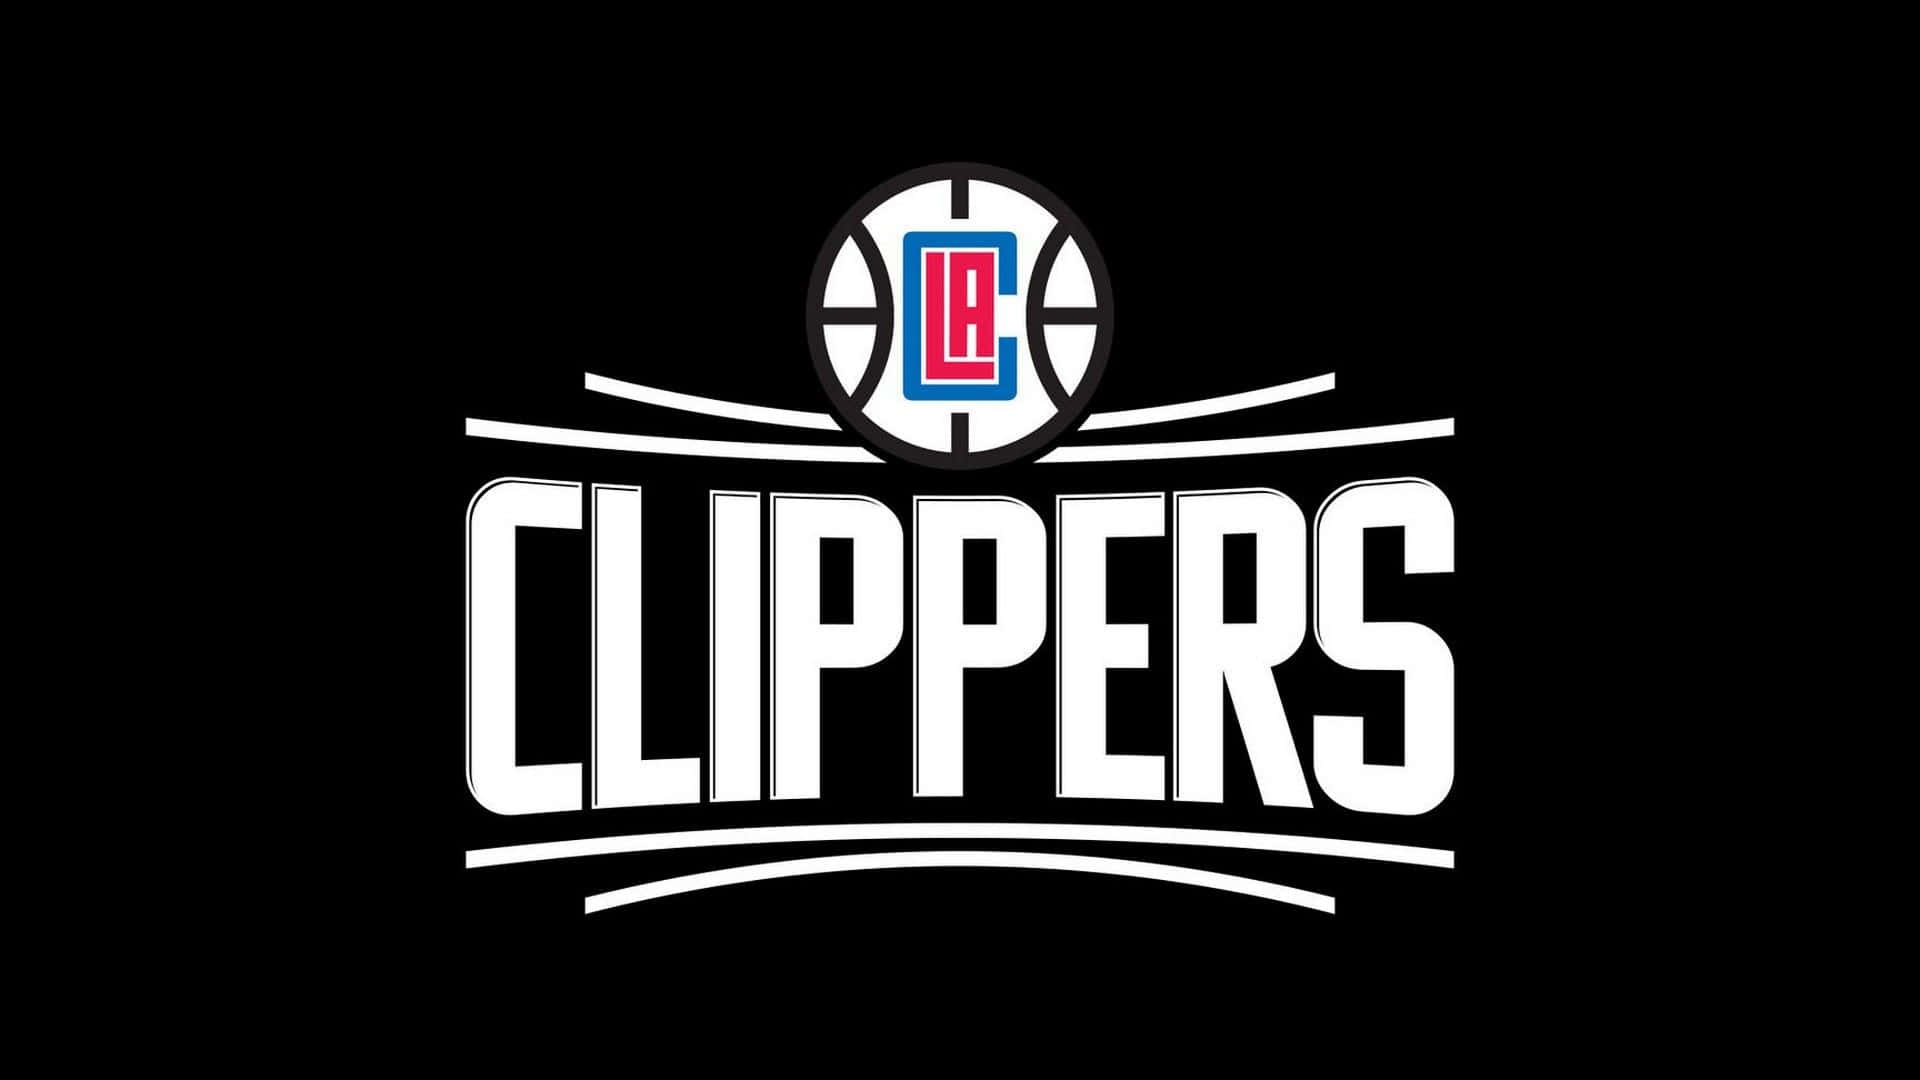 Ilustracióndel Logo Negro Del Equipo De La Nba La Clippers. Fondo de pantalla